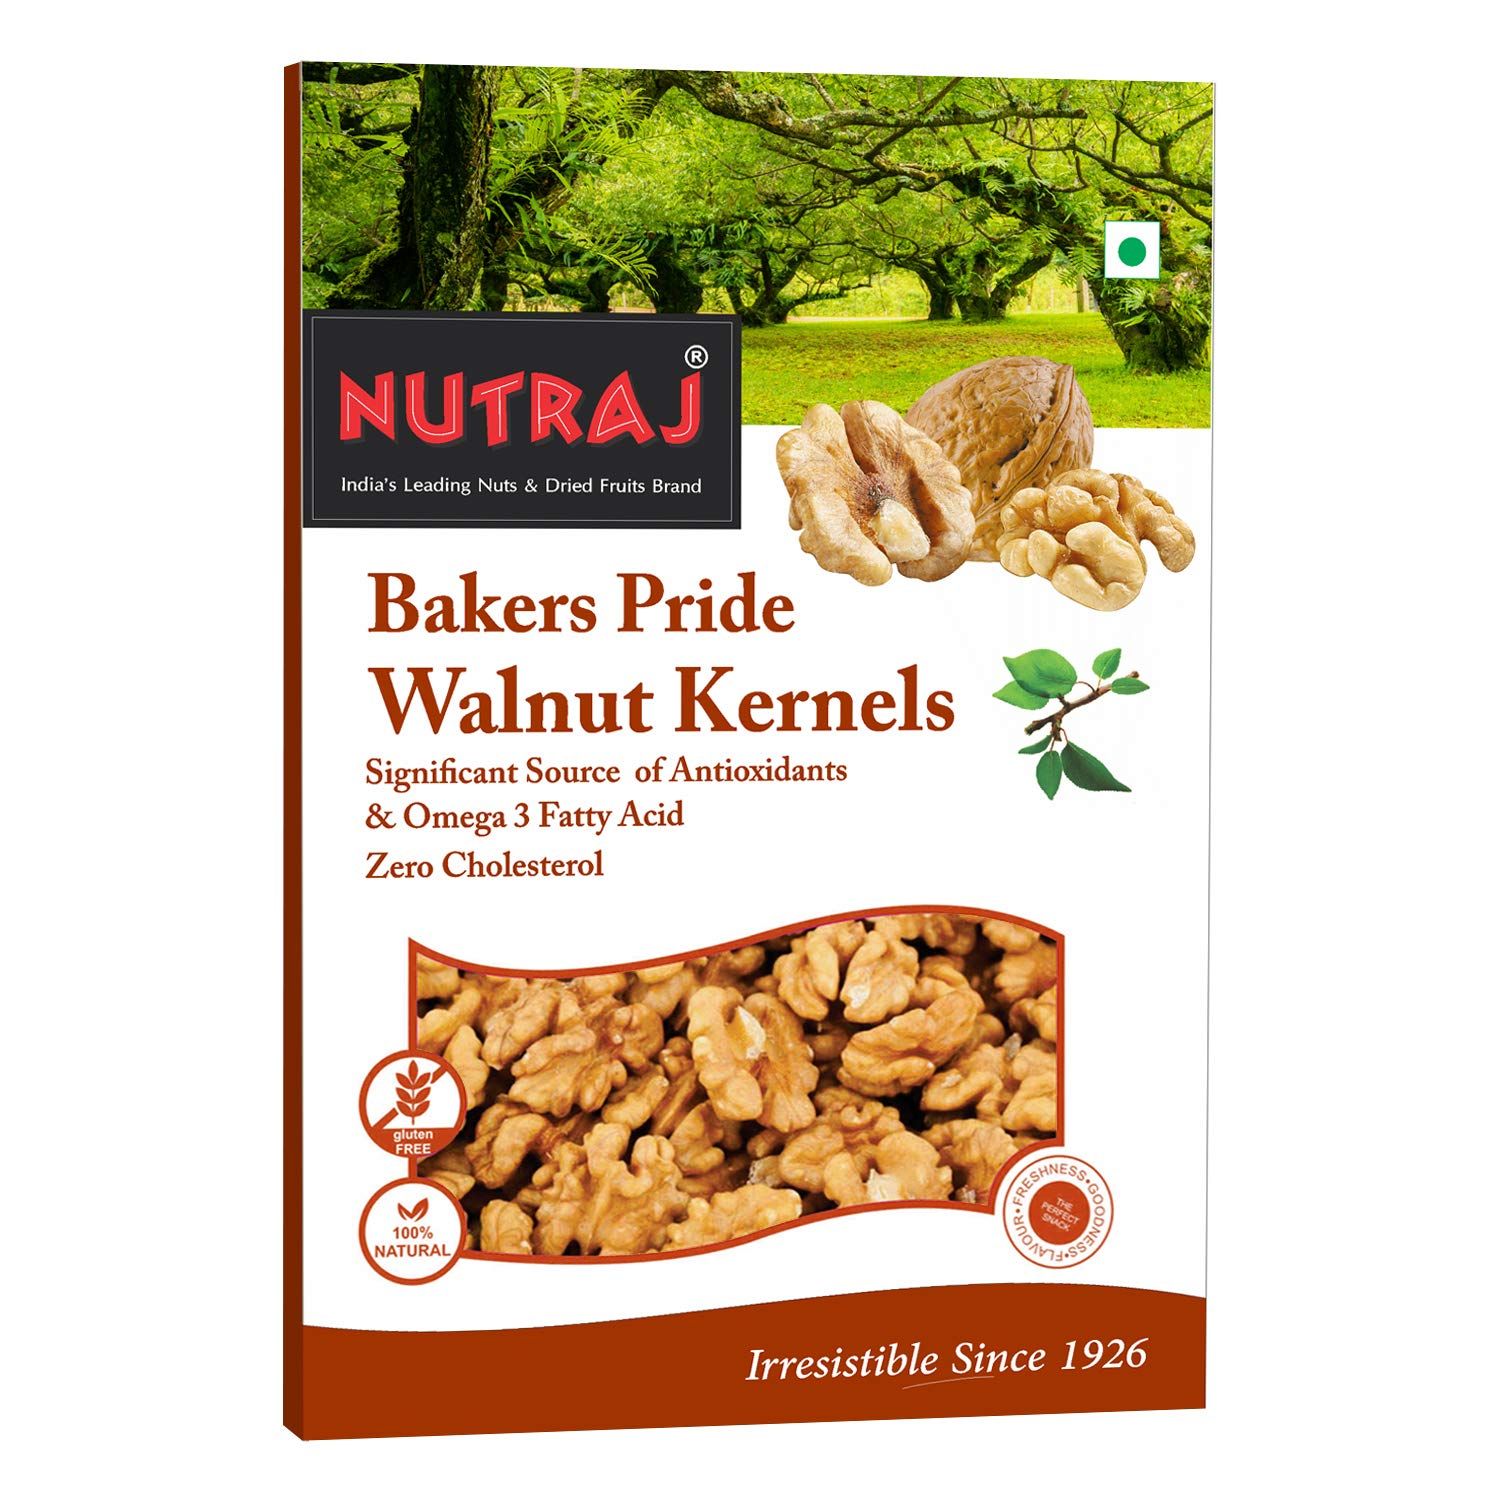 Nutraj Bakers Pride Walnut Kerners Image